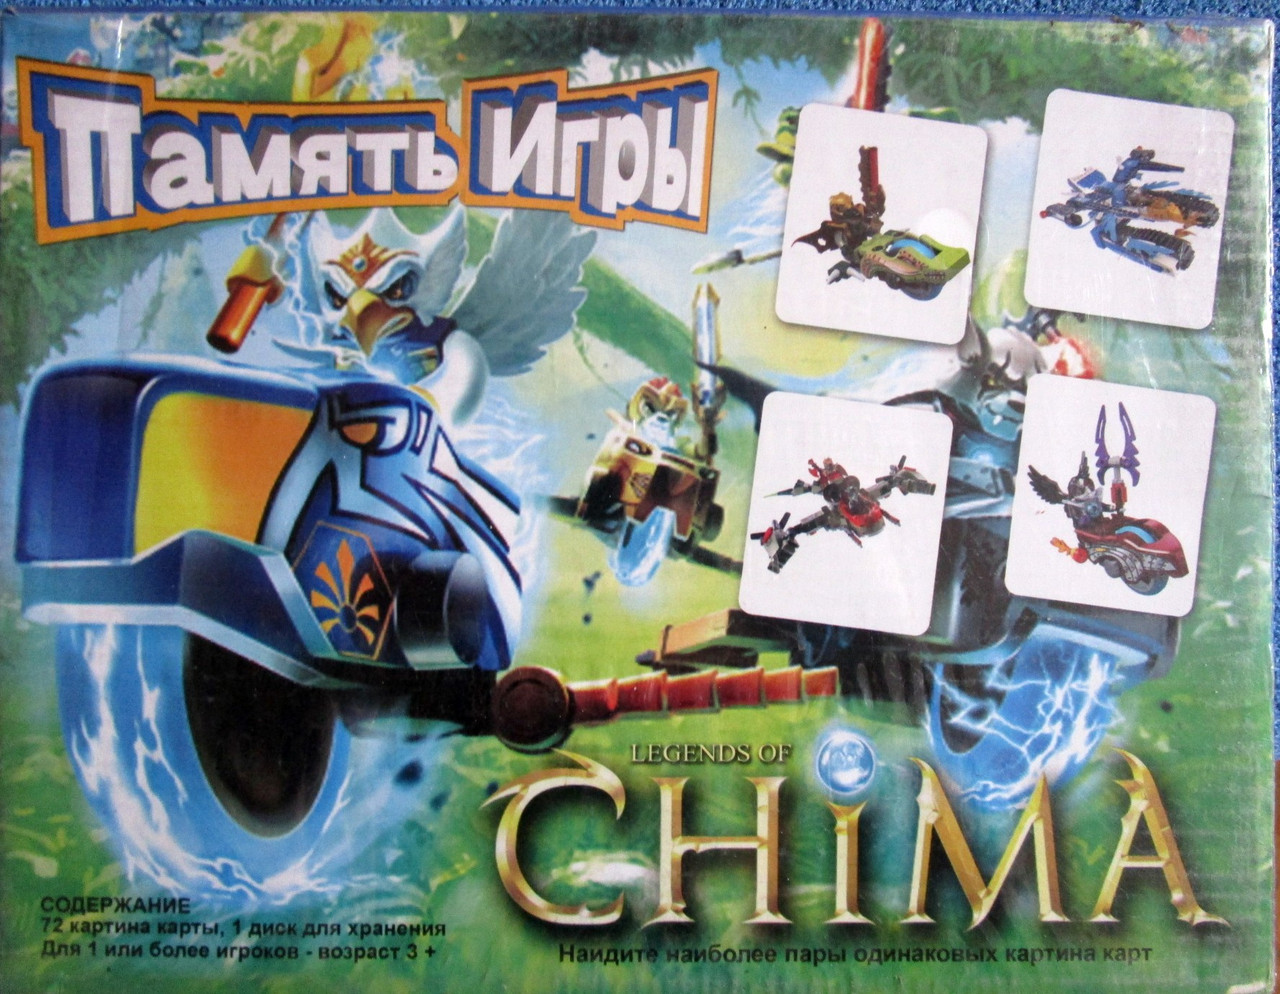 Игра интерактивная "память игра" legends of chima